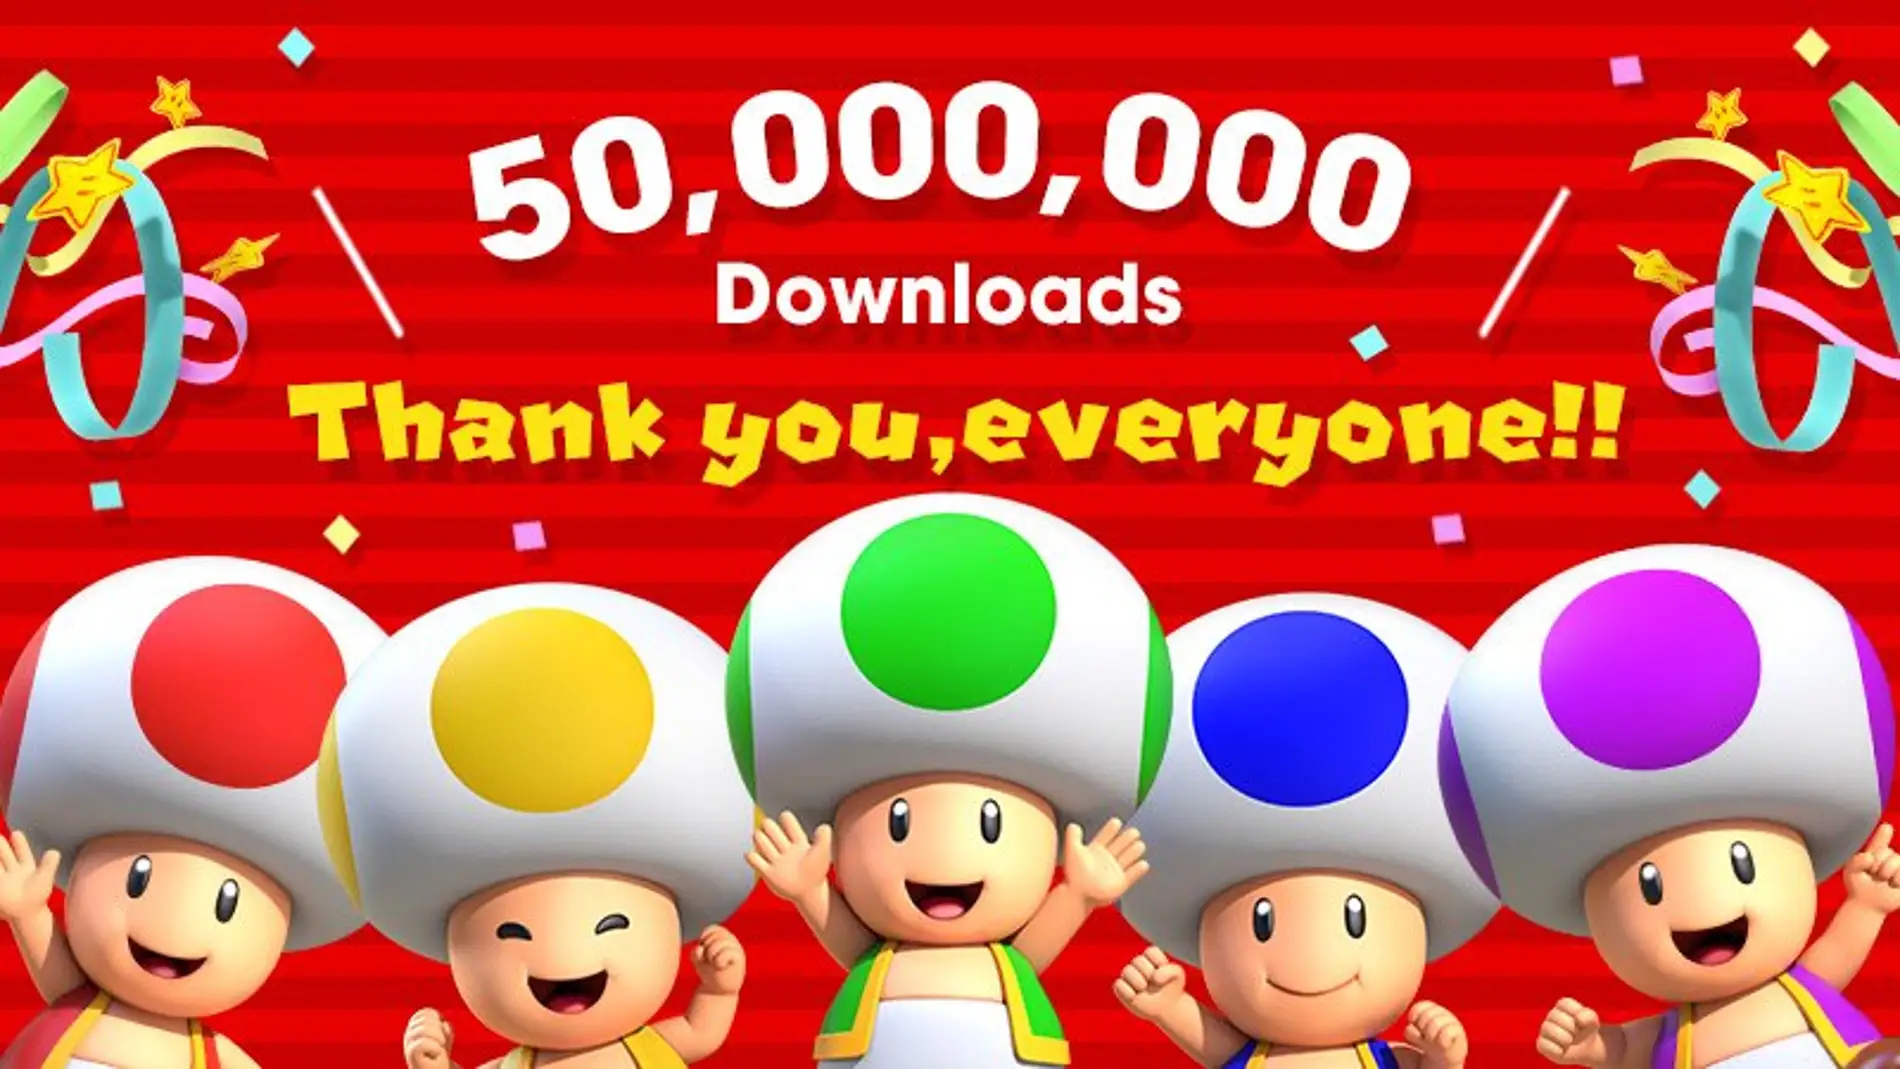 Celebración de los 50 millones de descargas